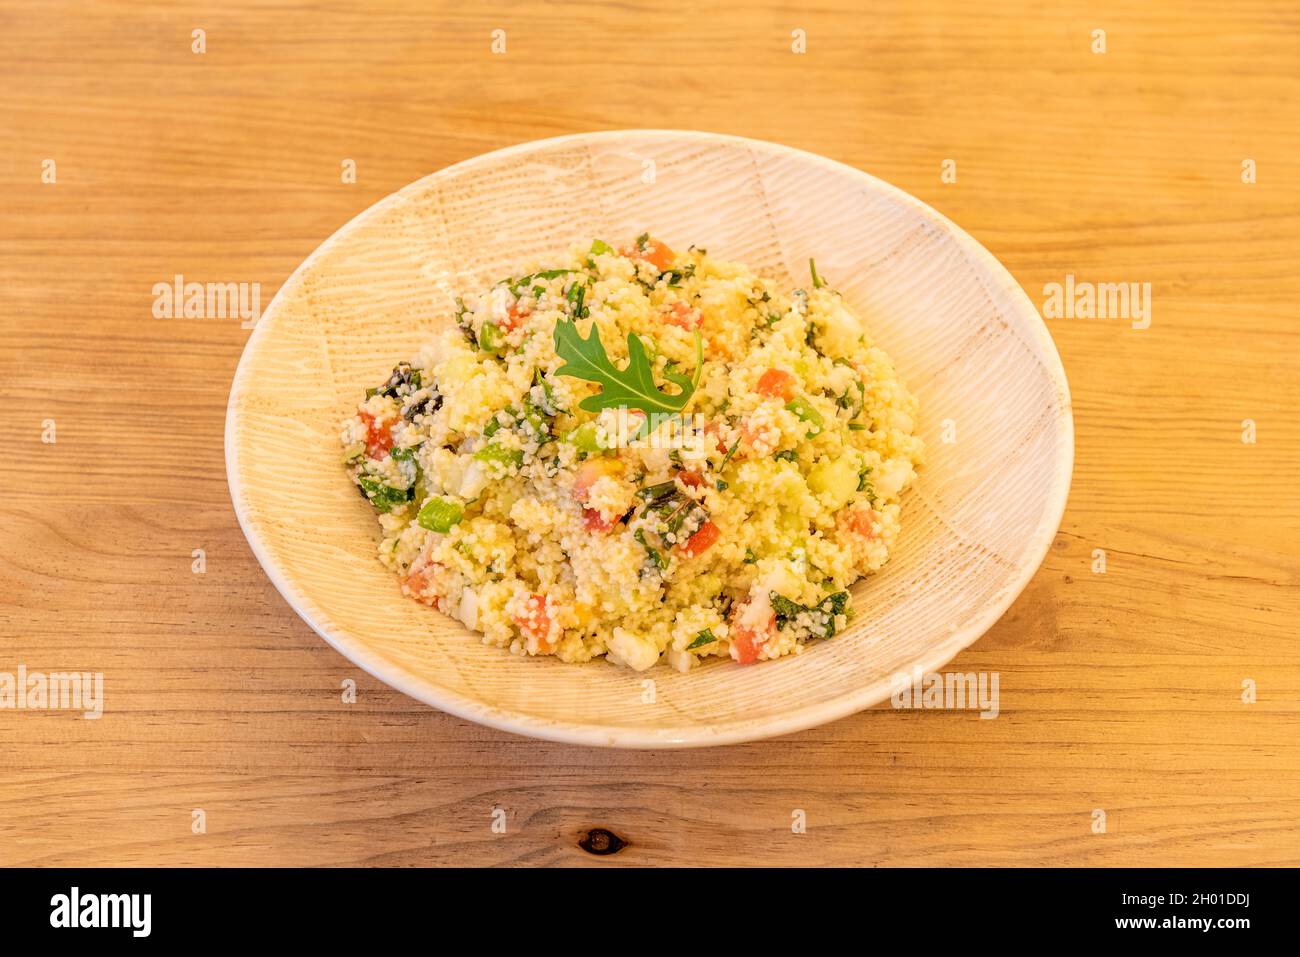 Assiette en bois avec recette pour tabouleh de légumes avec huile d'olive sur table en bois Banque D'Images